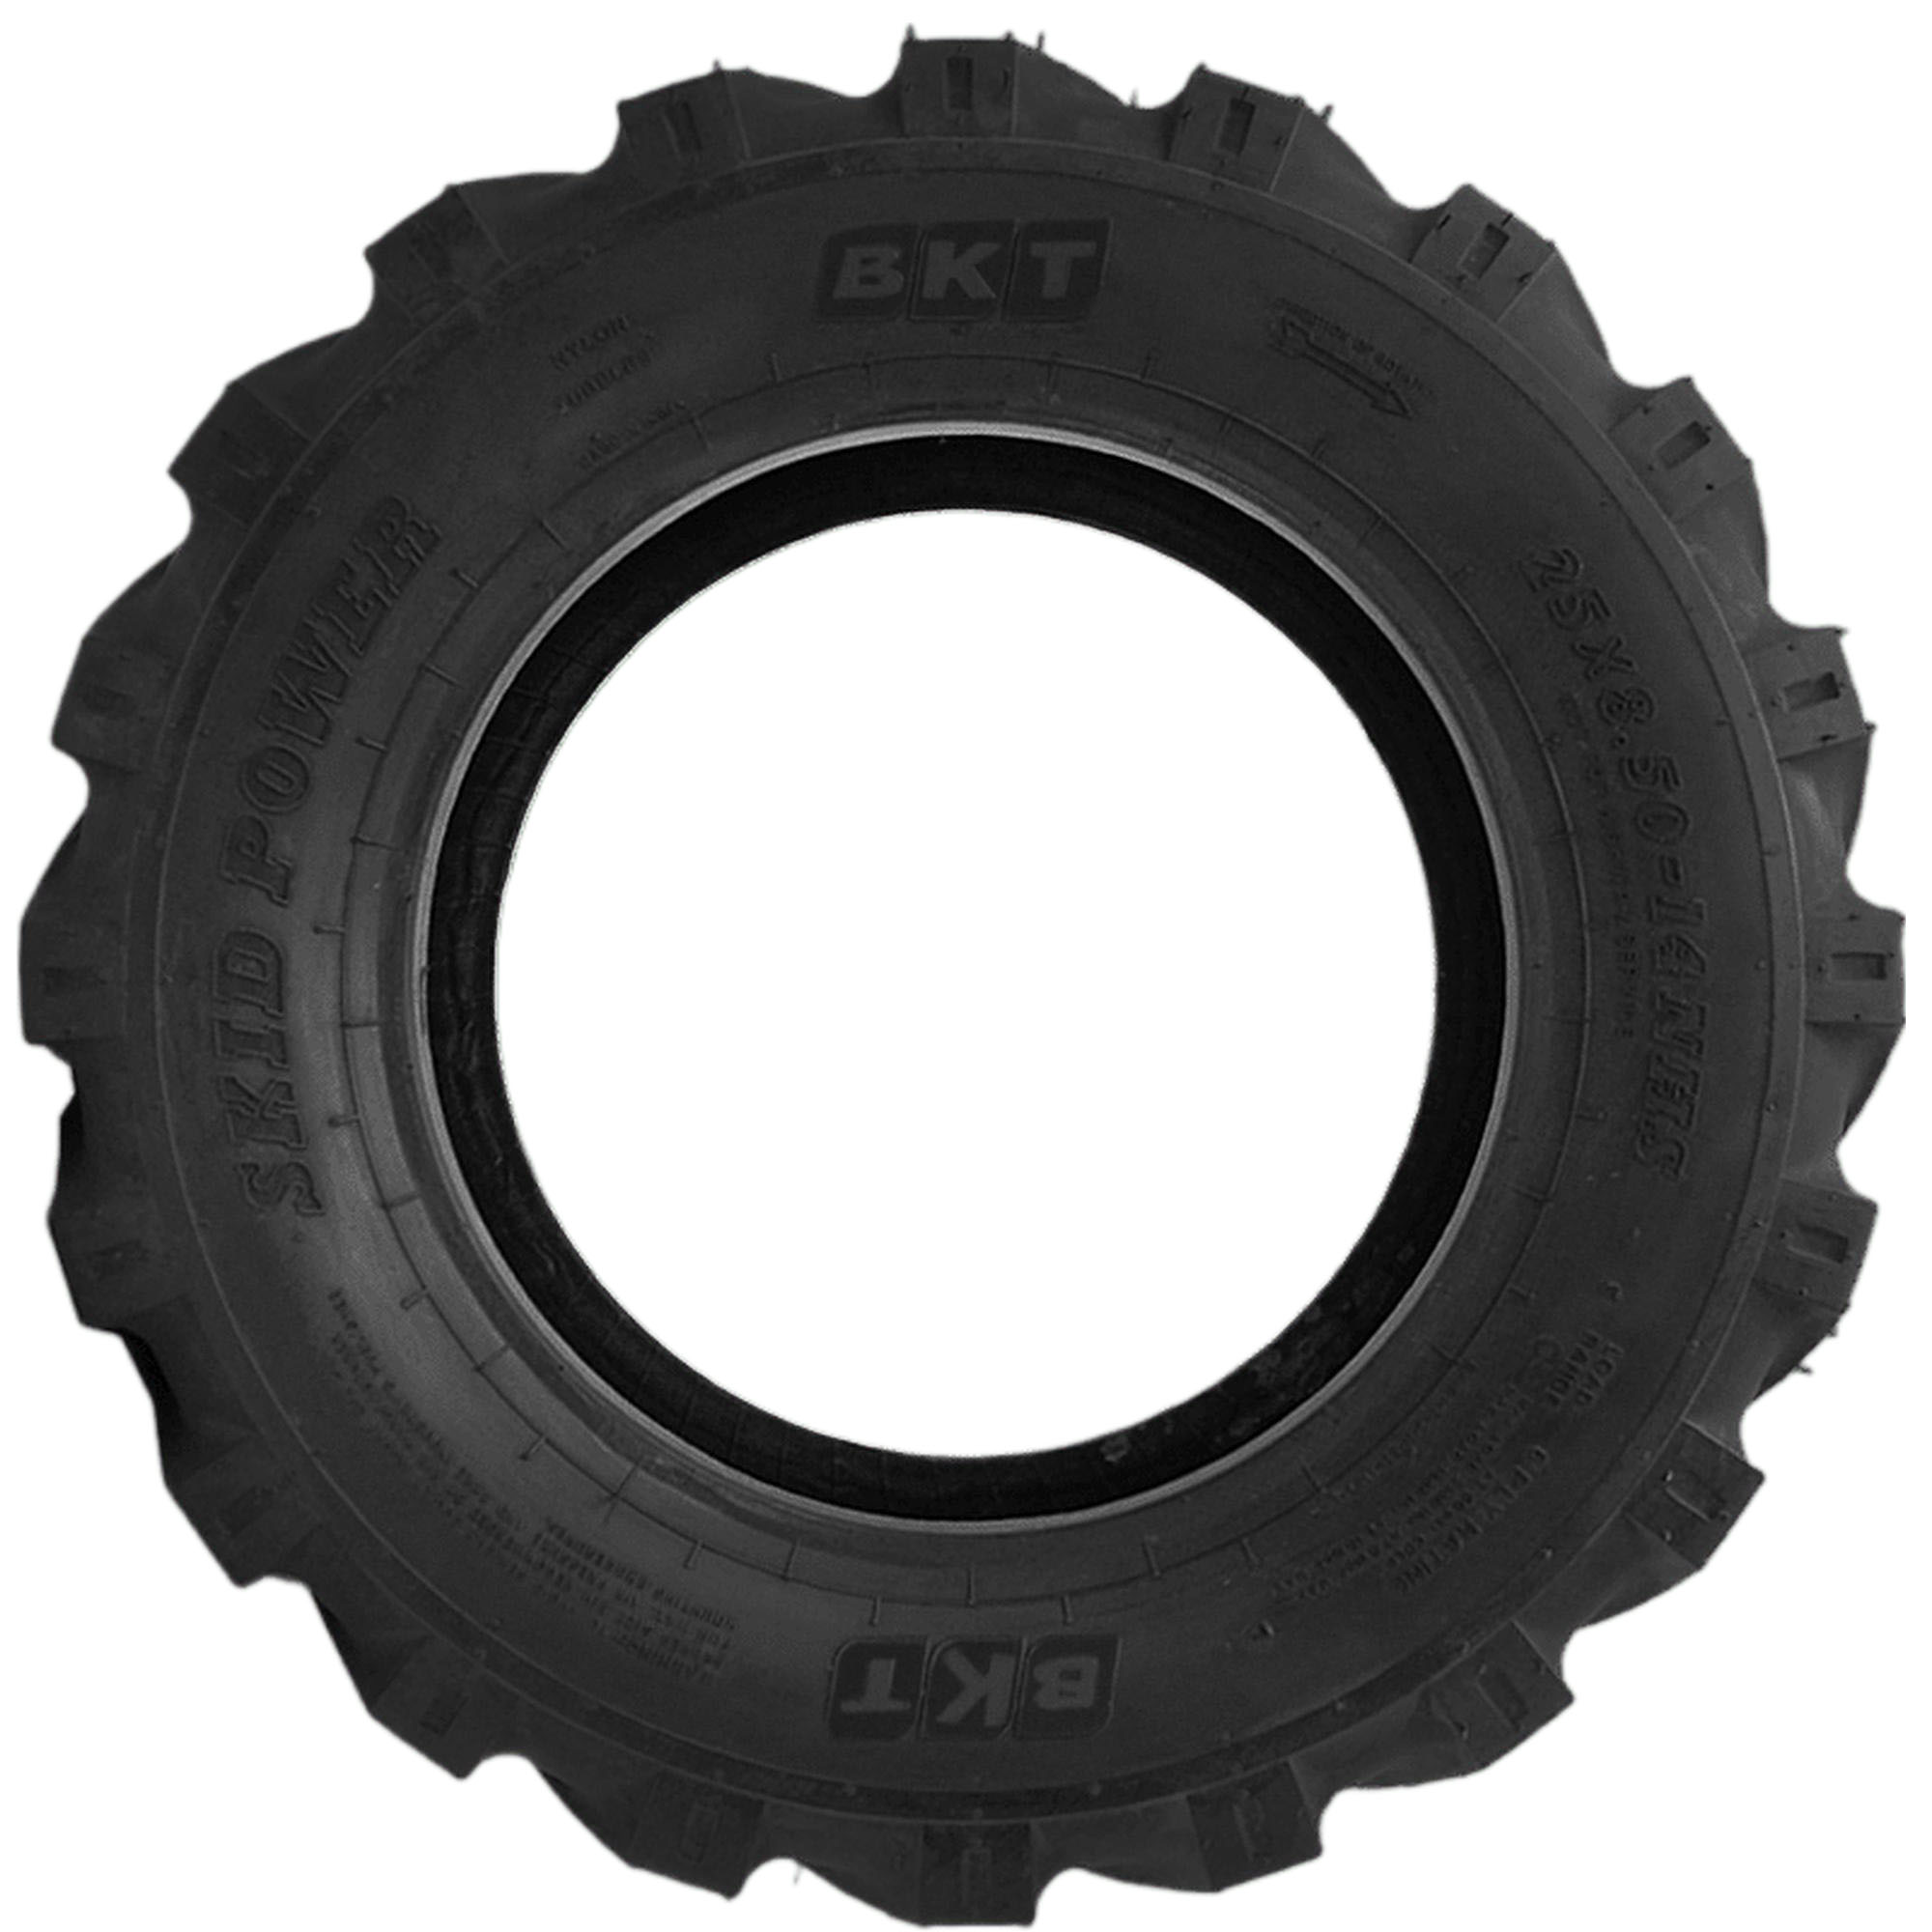 BKT Skid Power Skid Steer 25/8.50-14 Farm & Industrial Tires - image 2 of 6